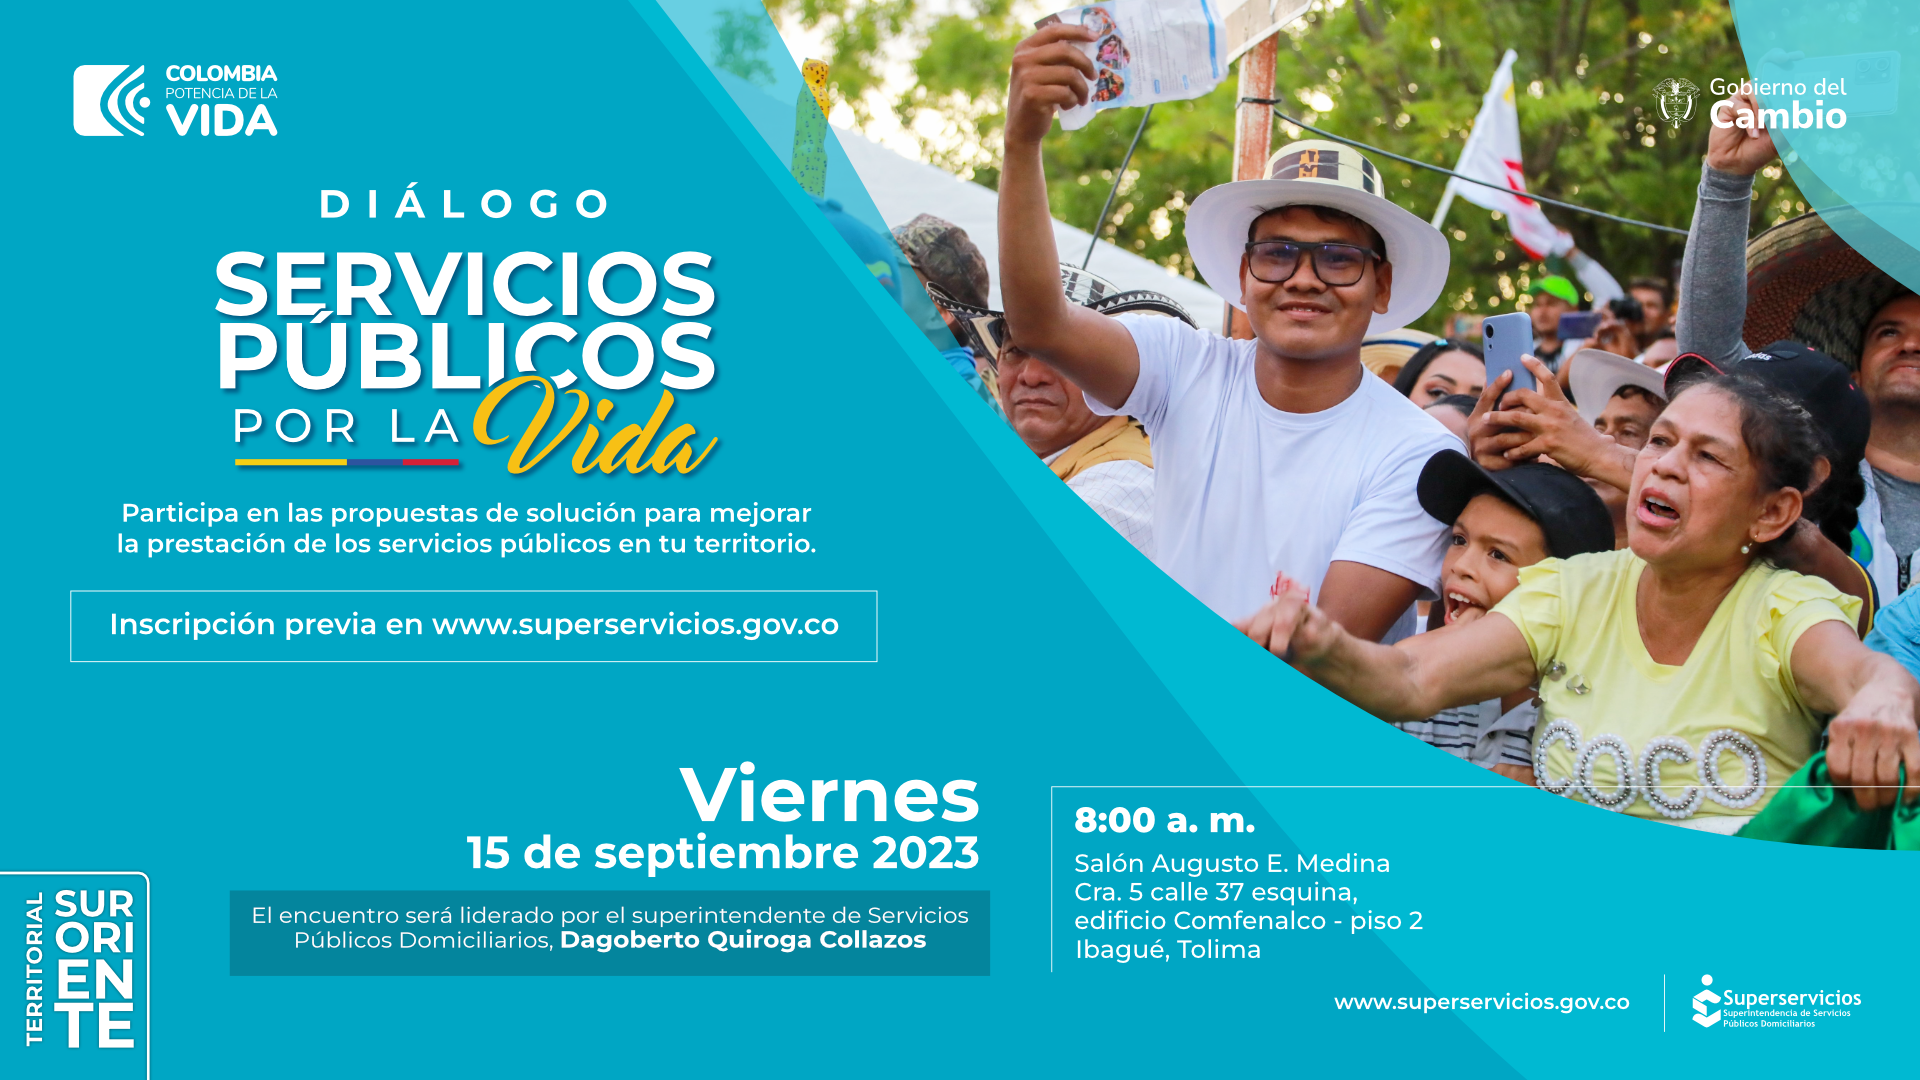 Superservicios convoca al “Diálogo Servicios Públicos   por la Vida”, en Ibagué, Tolima 
